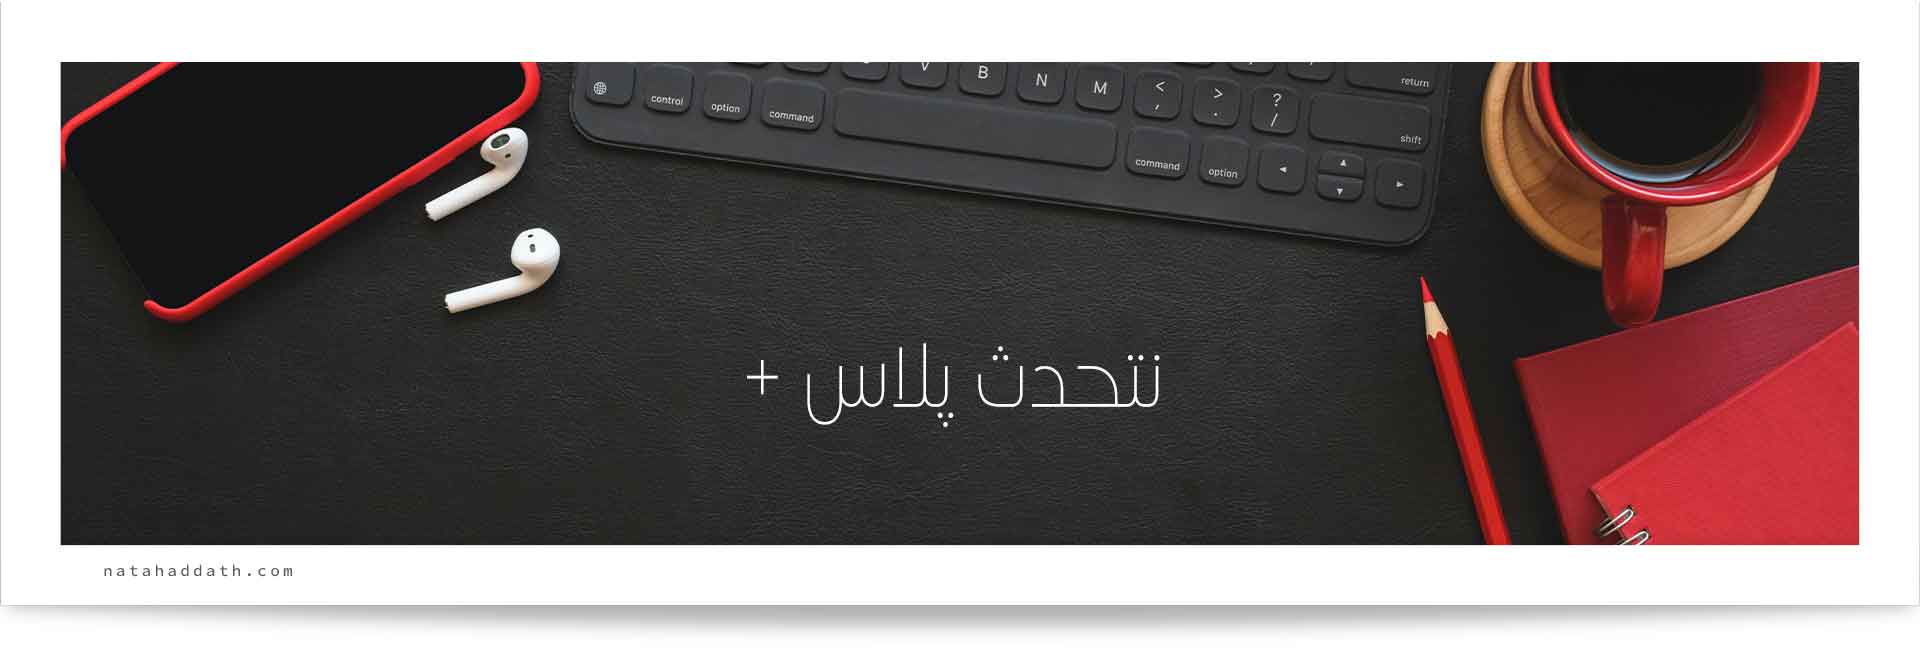 آموزش عربی تخصصی